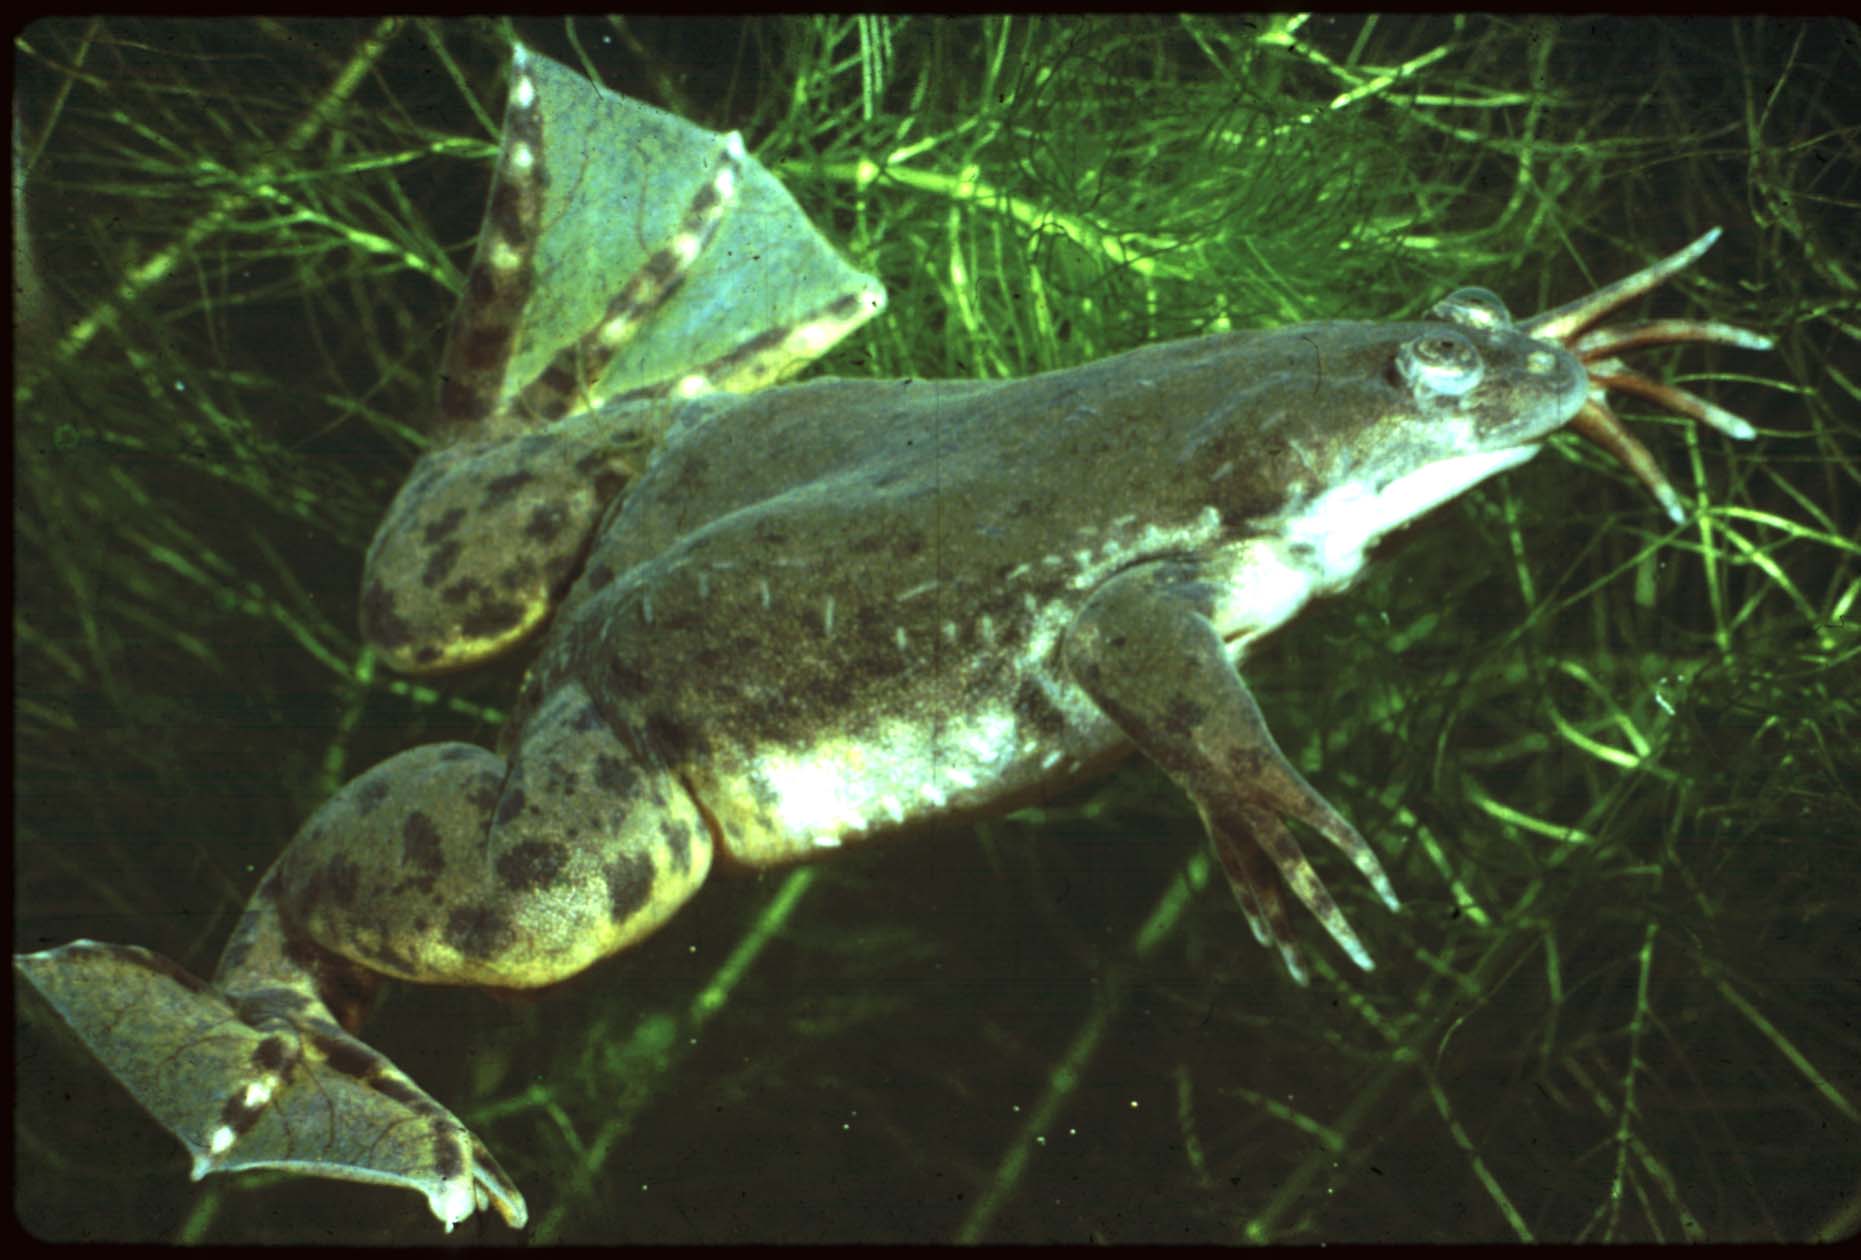 Xenopus laevis est une espèce d'amphibien originaire du centre et du sud de l'Afrique. Elle a été introduite dans de nombreux pays dont la France. Elle est souvent utilisée en laboratoire comme organisme modèle. © cep.unt.edu